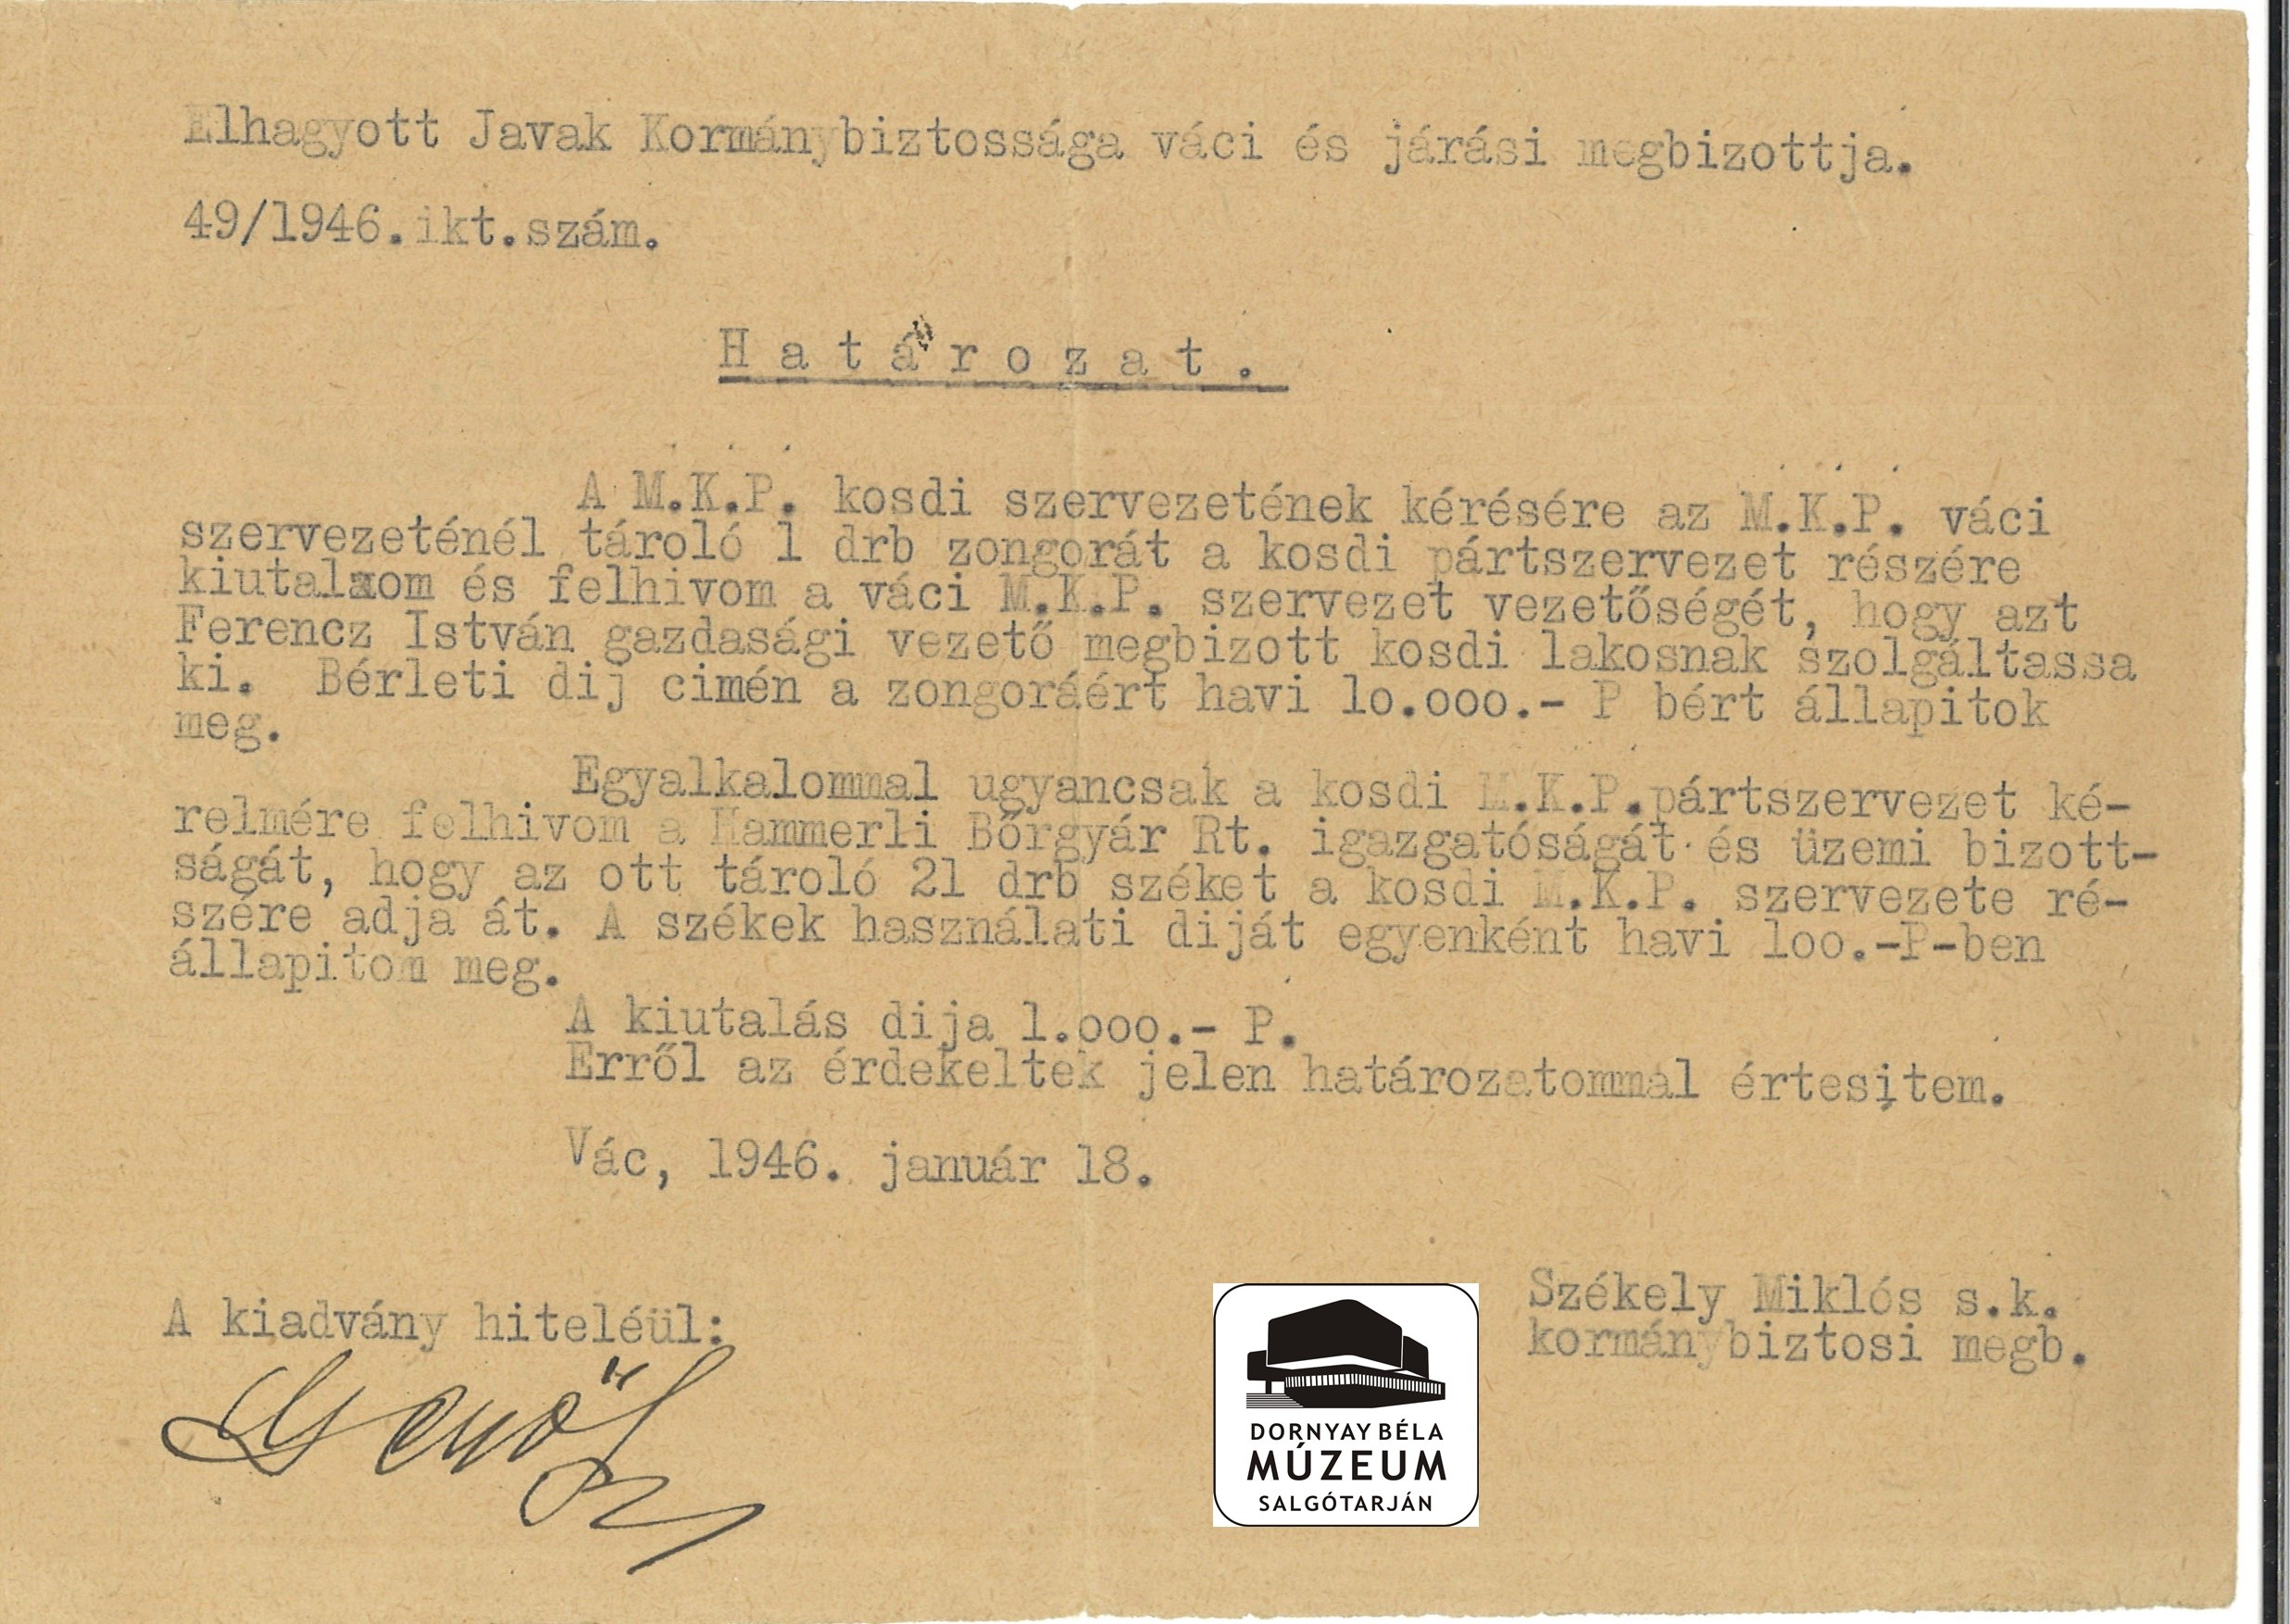 Elhagyott Javak Kormánybizottságának határozata (Dornyay Béla Múzeum, Salgótarján CC BY-NC-SA)